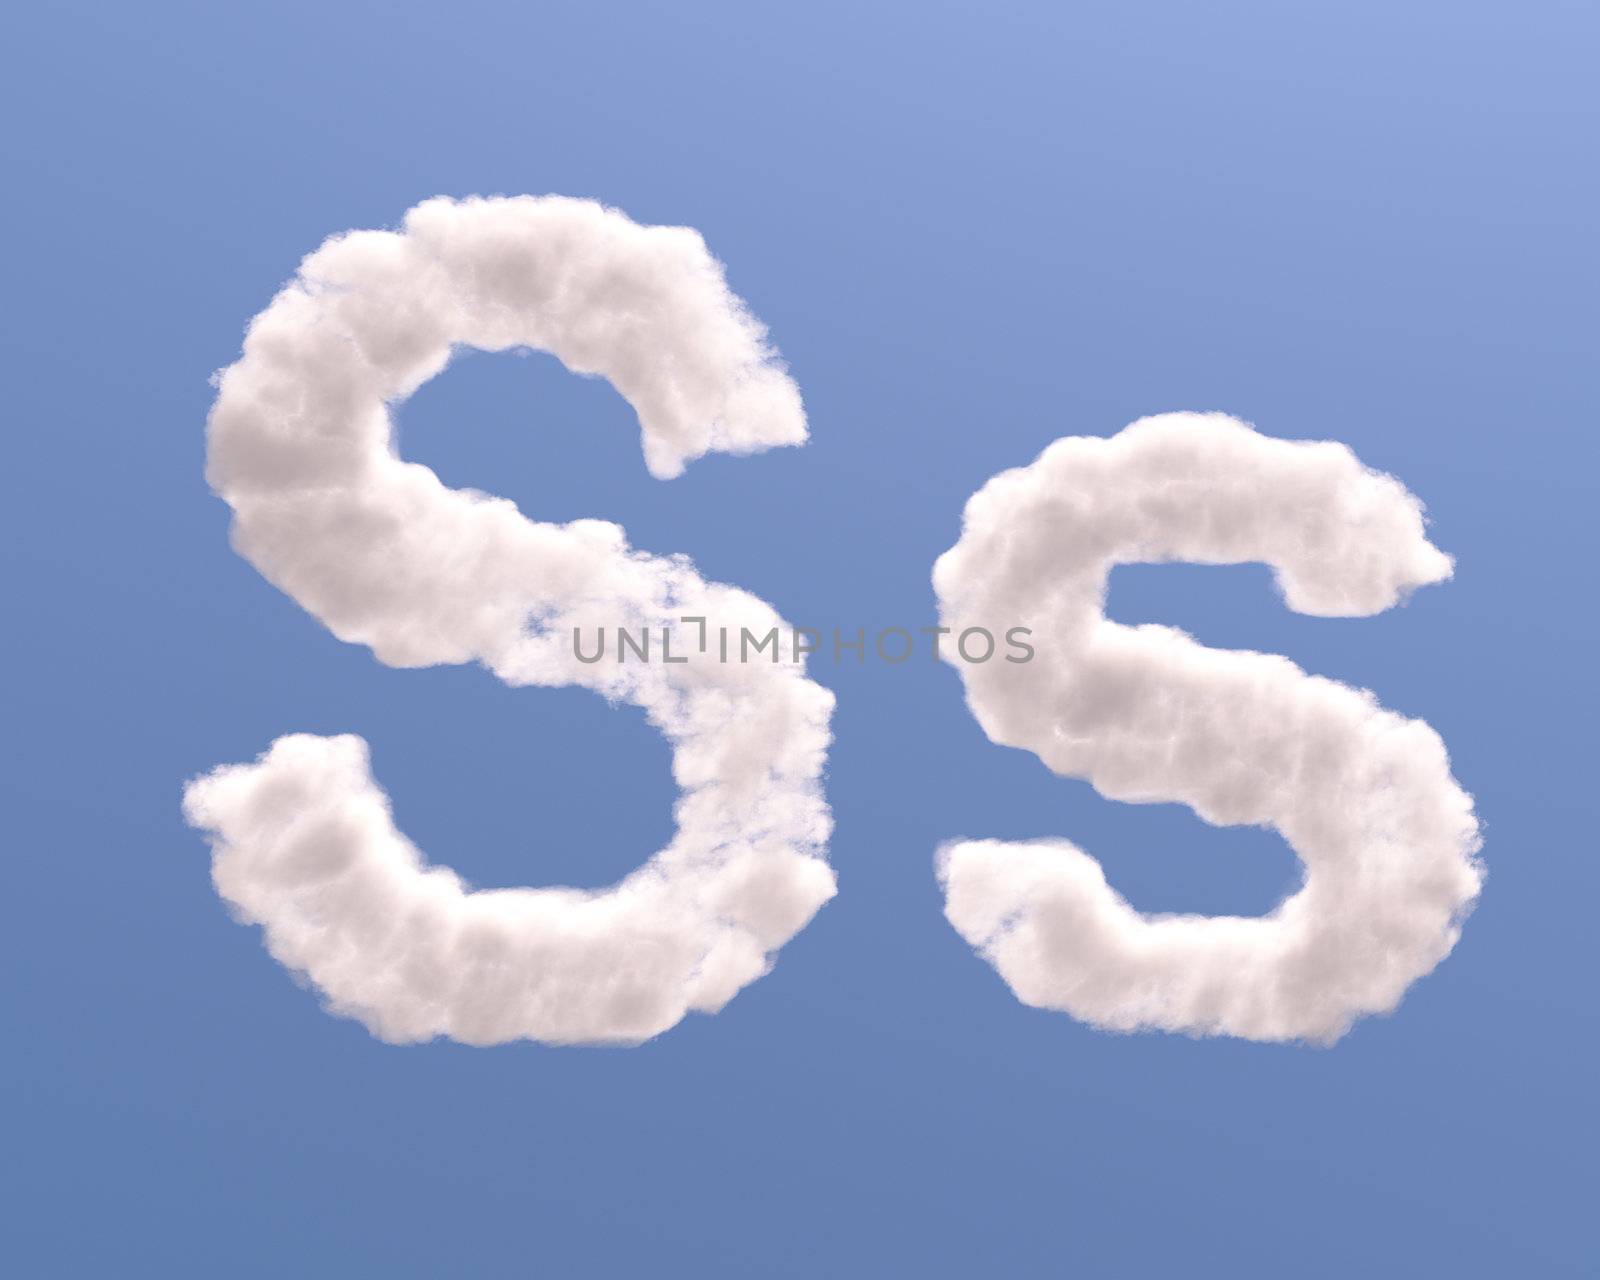 Letter S cloud shape by Zelfit